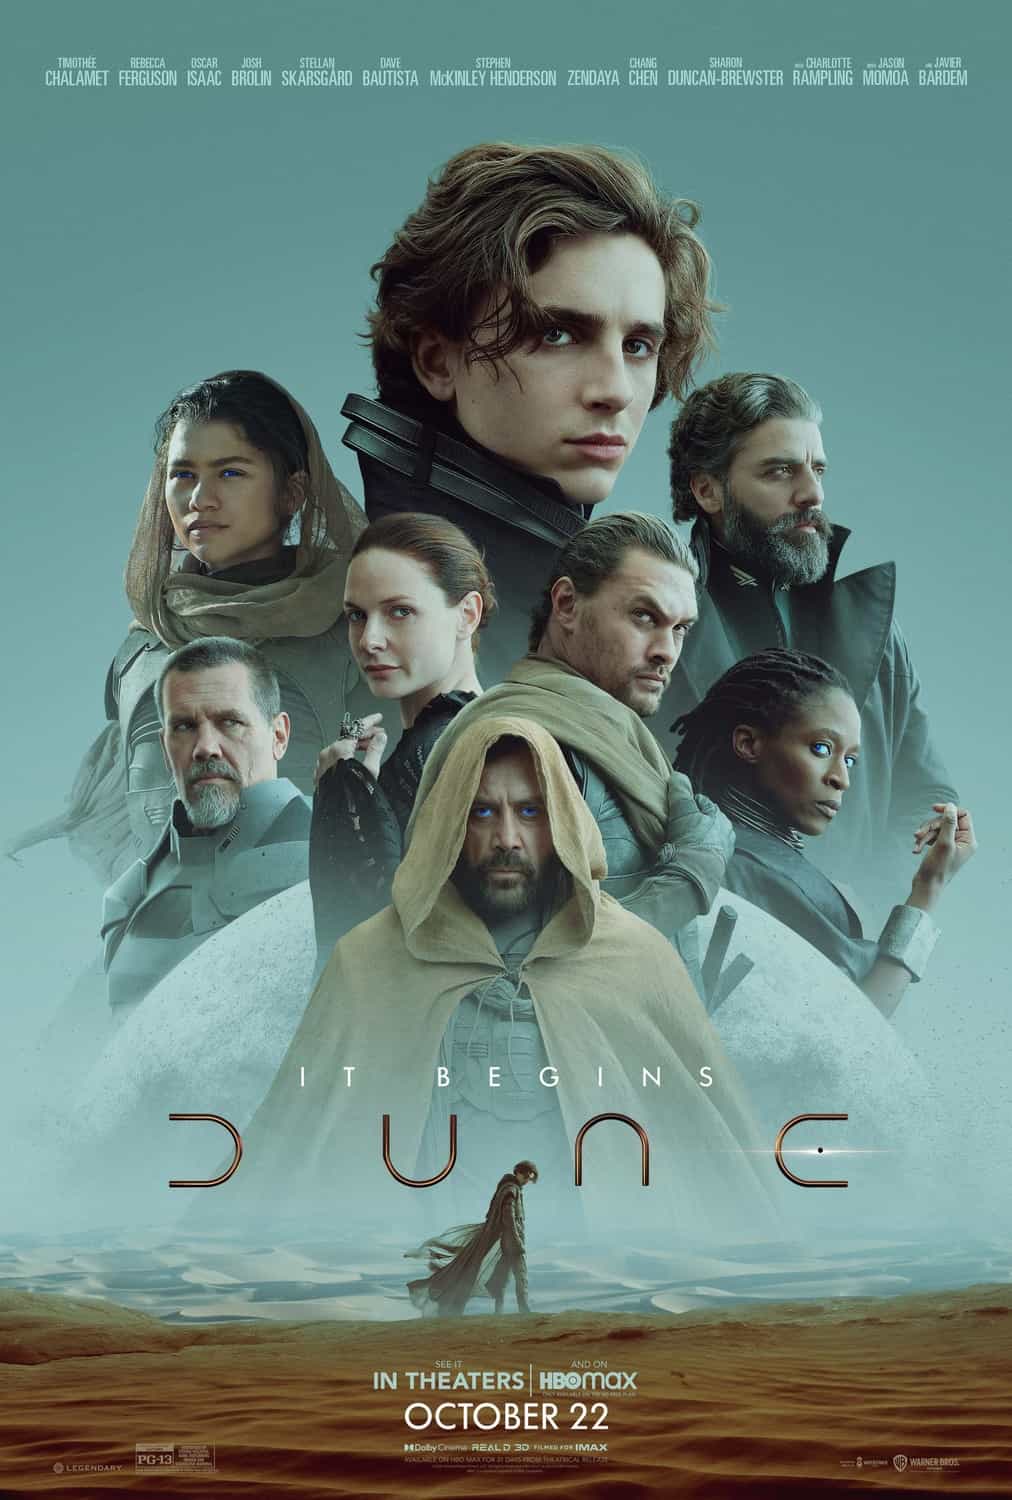 Dune directed by Denis Villeneuve gets delayed to October 2021